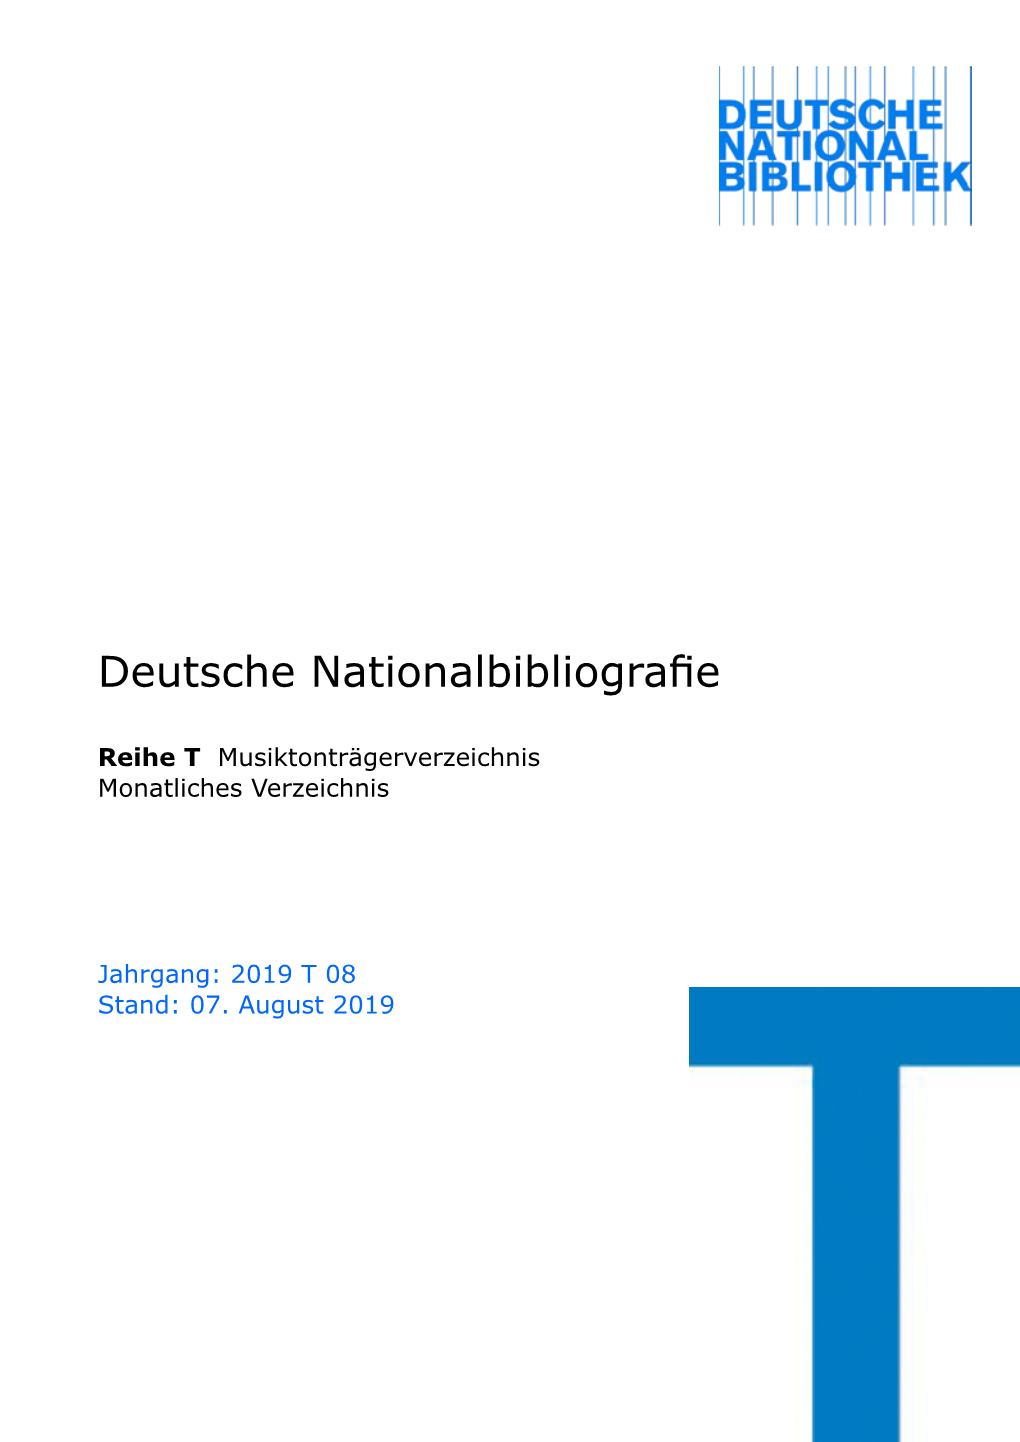 Deutsche Nationalbibliografie 2019 T 08